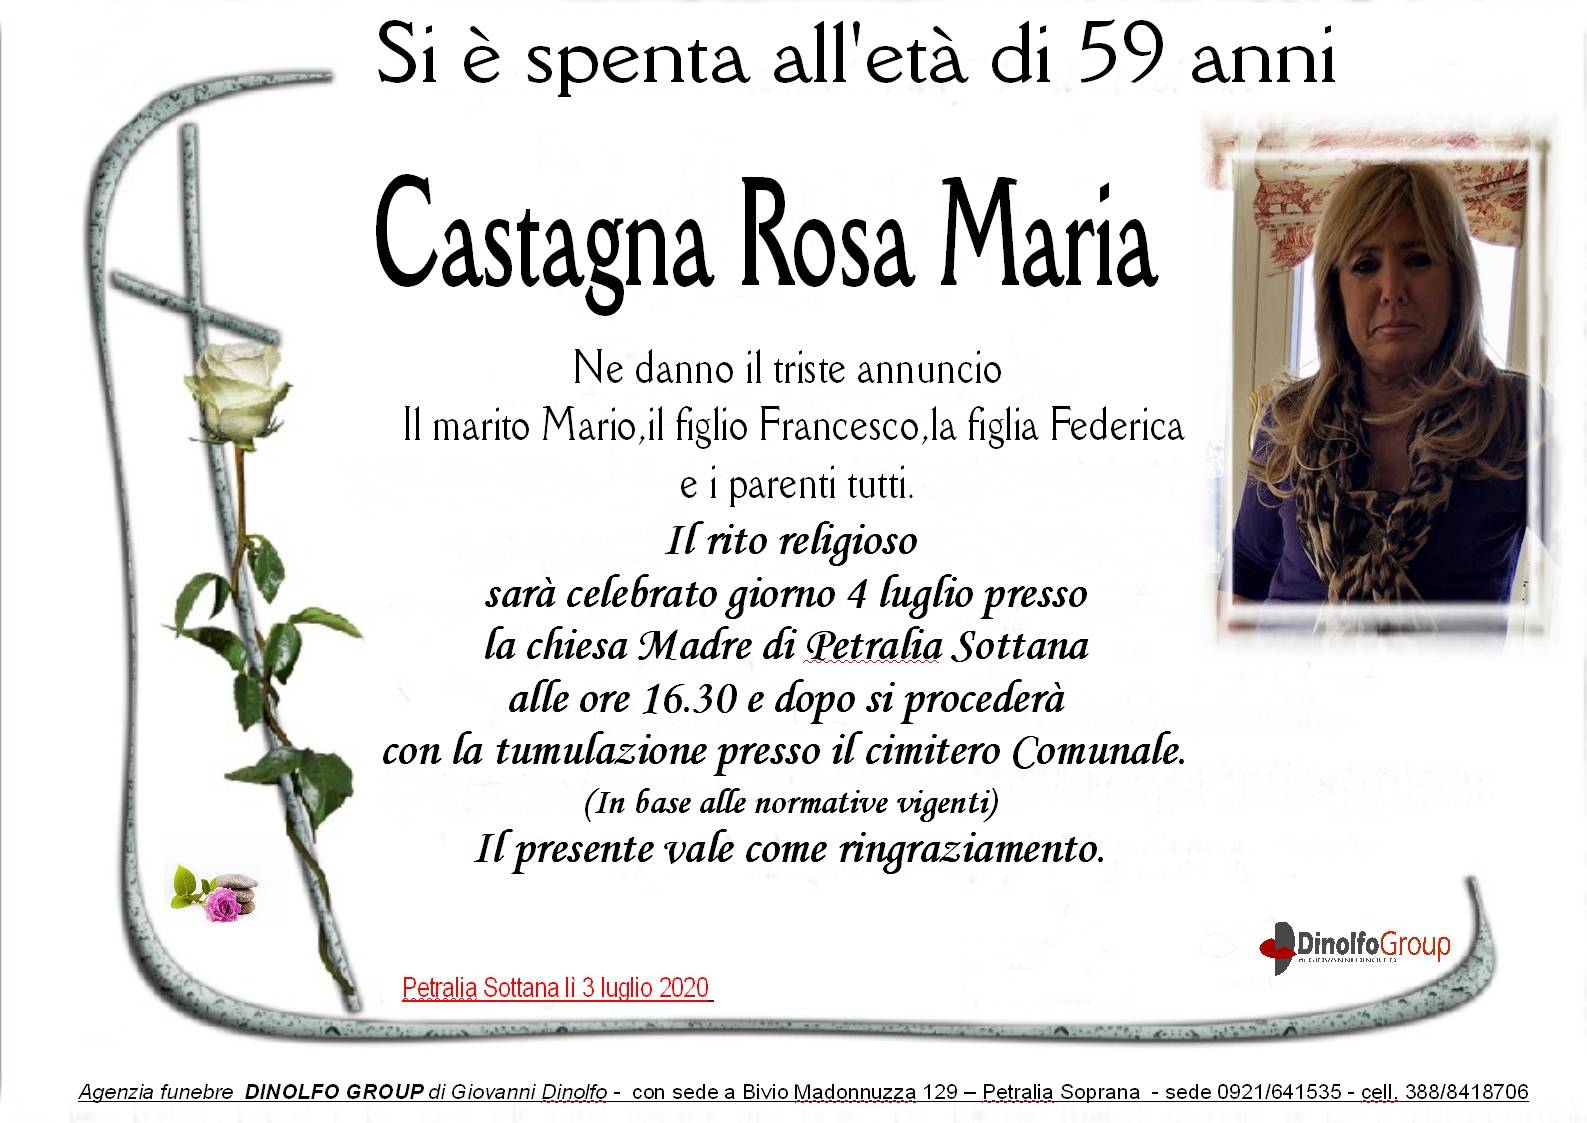 Rosa Maria Castagna